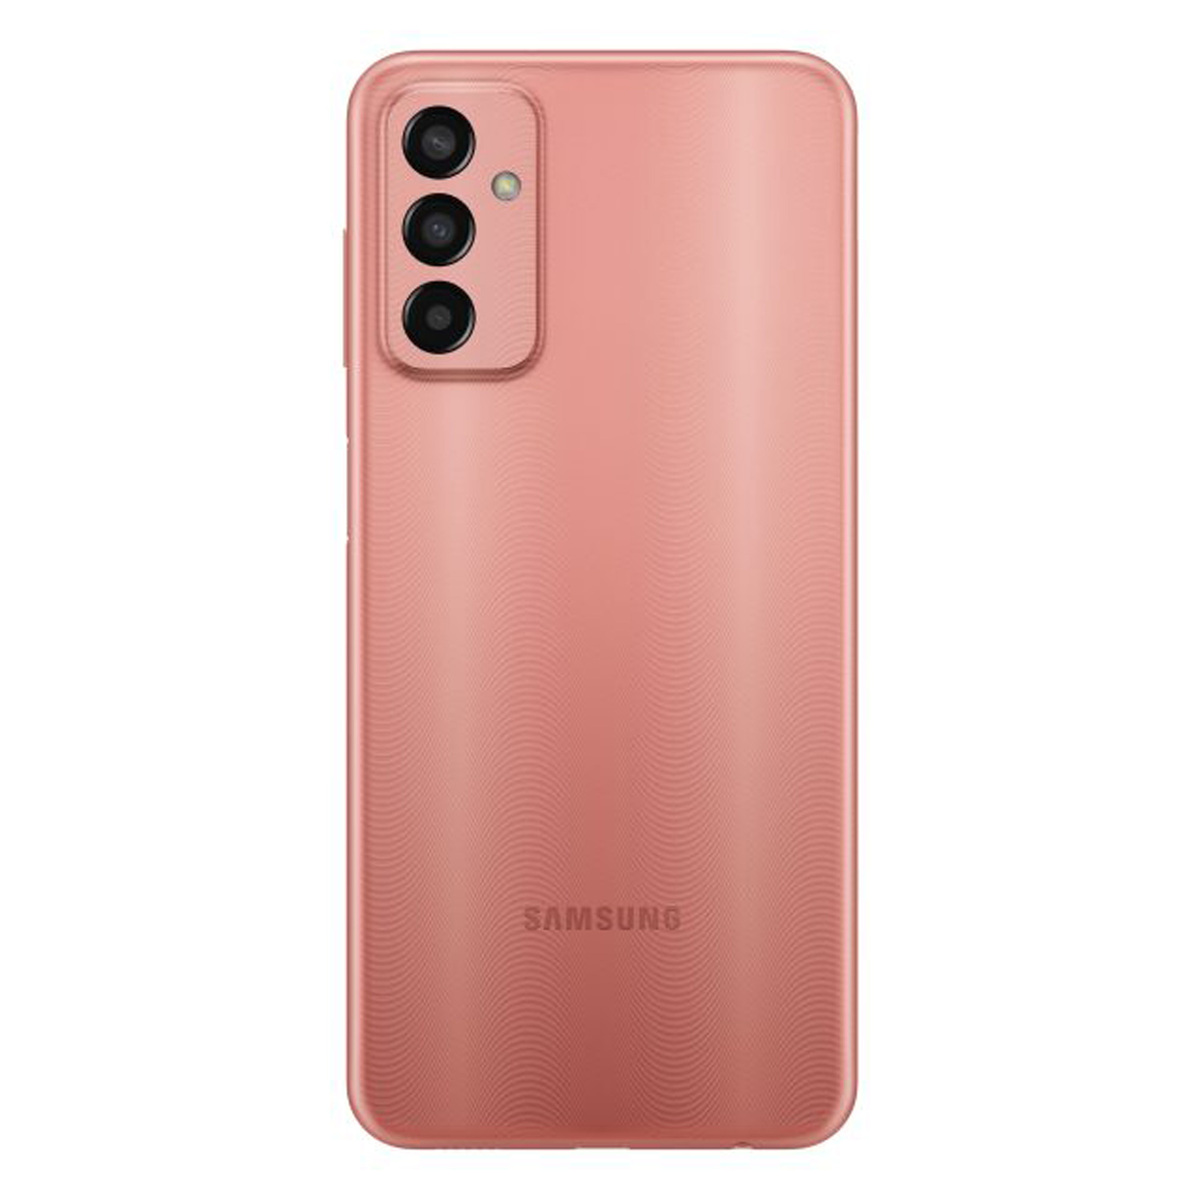 SAMSUNG Galaxy M13 4G, Orange Copper (SM-M135FIDDMEA), 4 GB RAM, 64 GB Storage